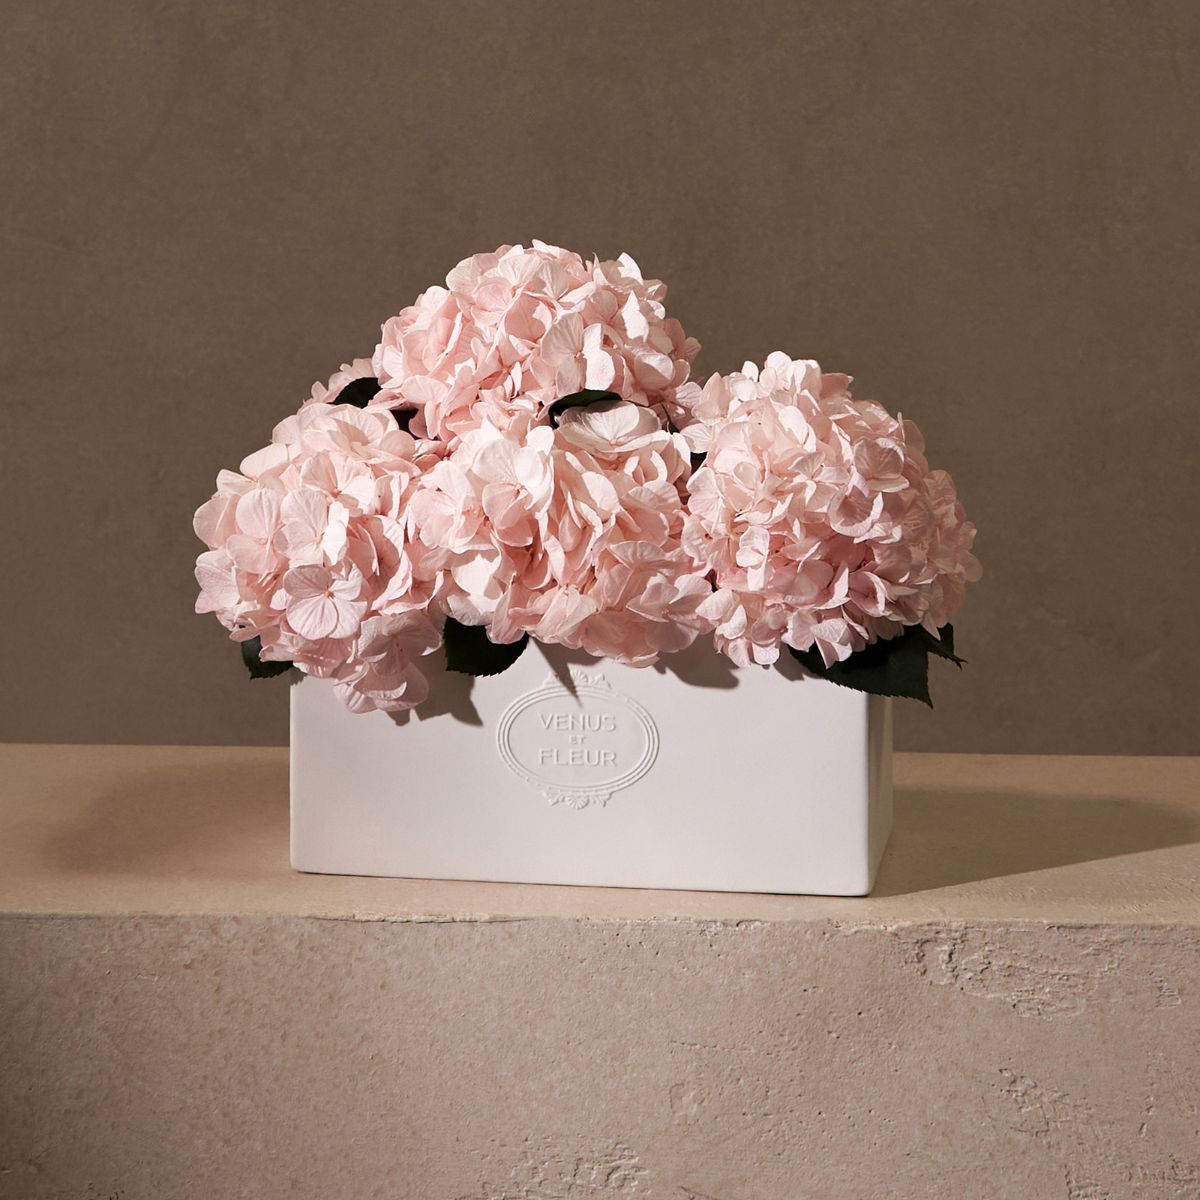 Venus et Fleur Pink Eternity Hydrangea Arrangement in White Porcelain Vase